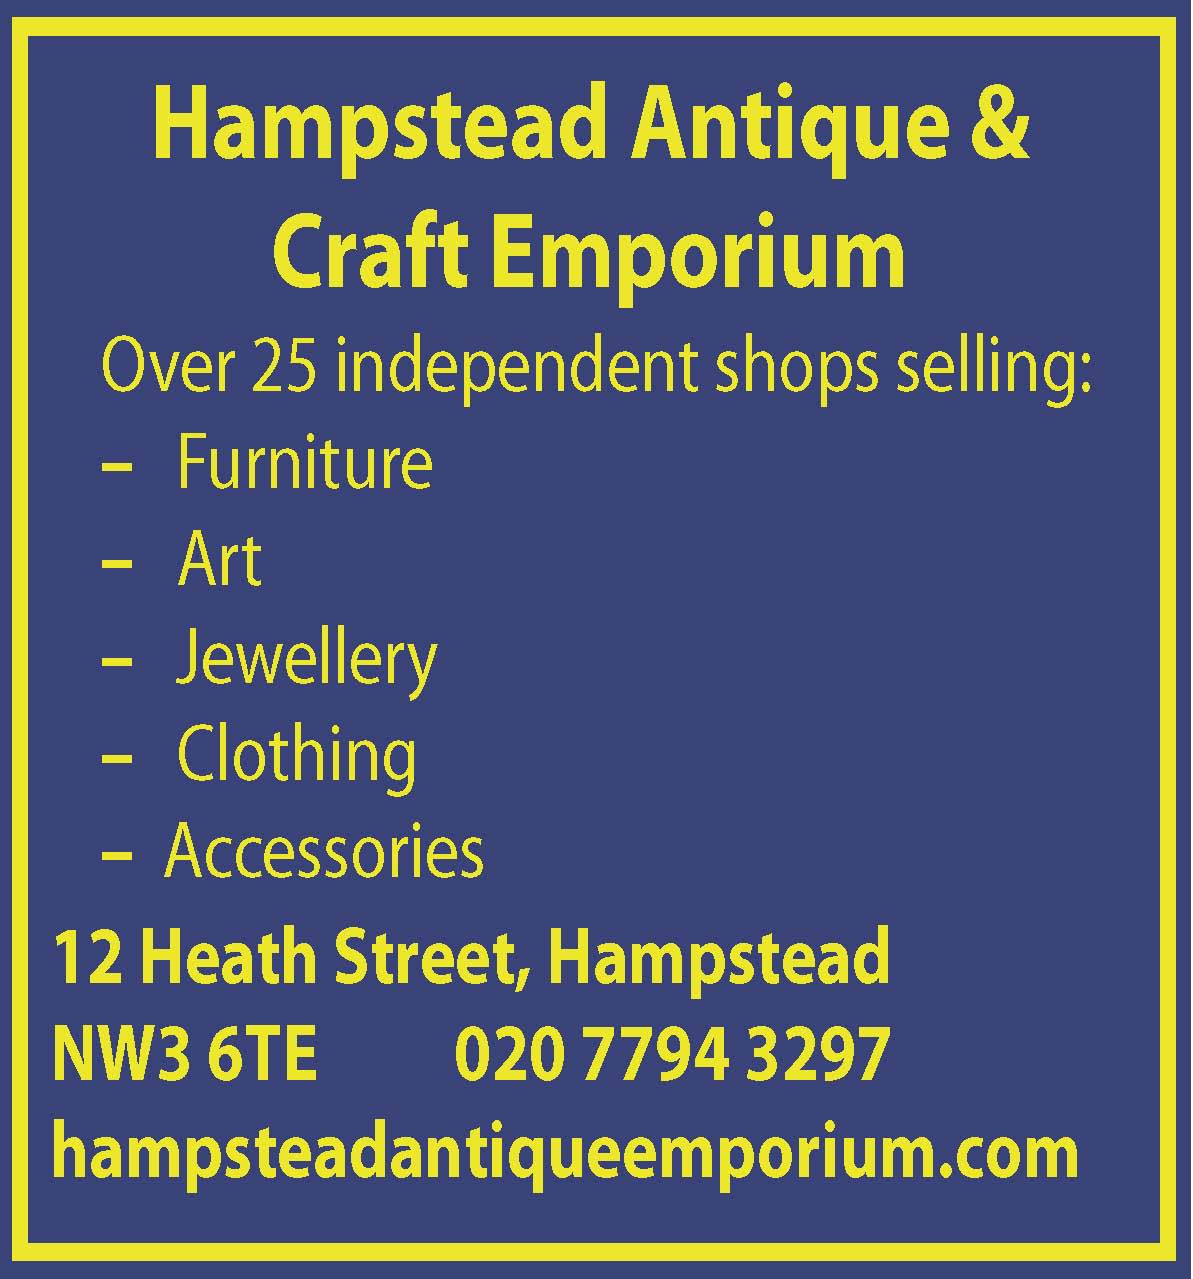 Hampstead Antique & Craft Emporium.jpg